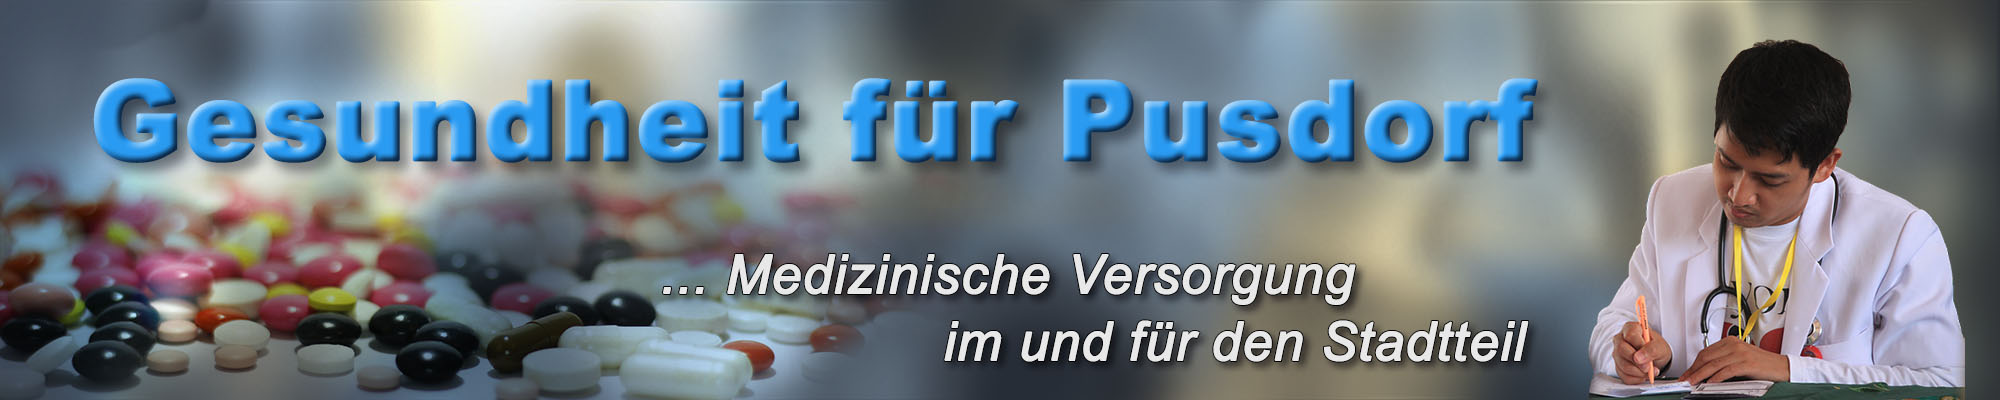 pusdorf.info – Facharzt suchen